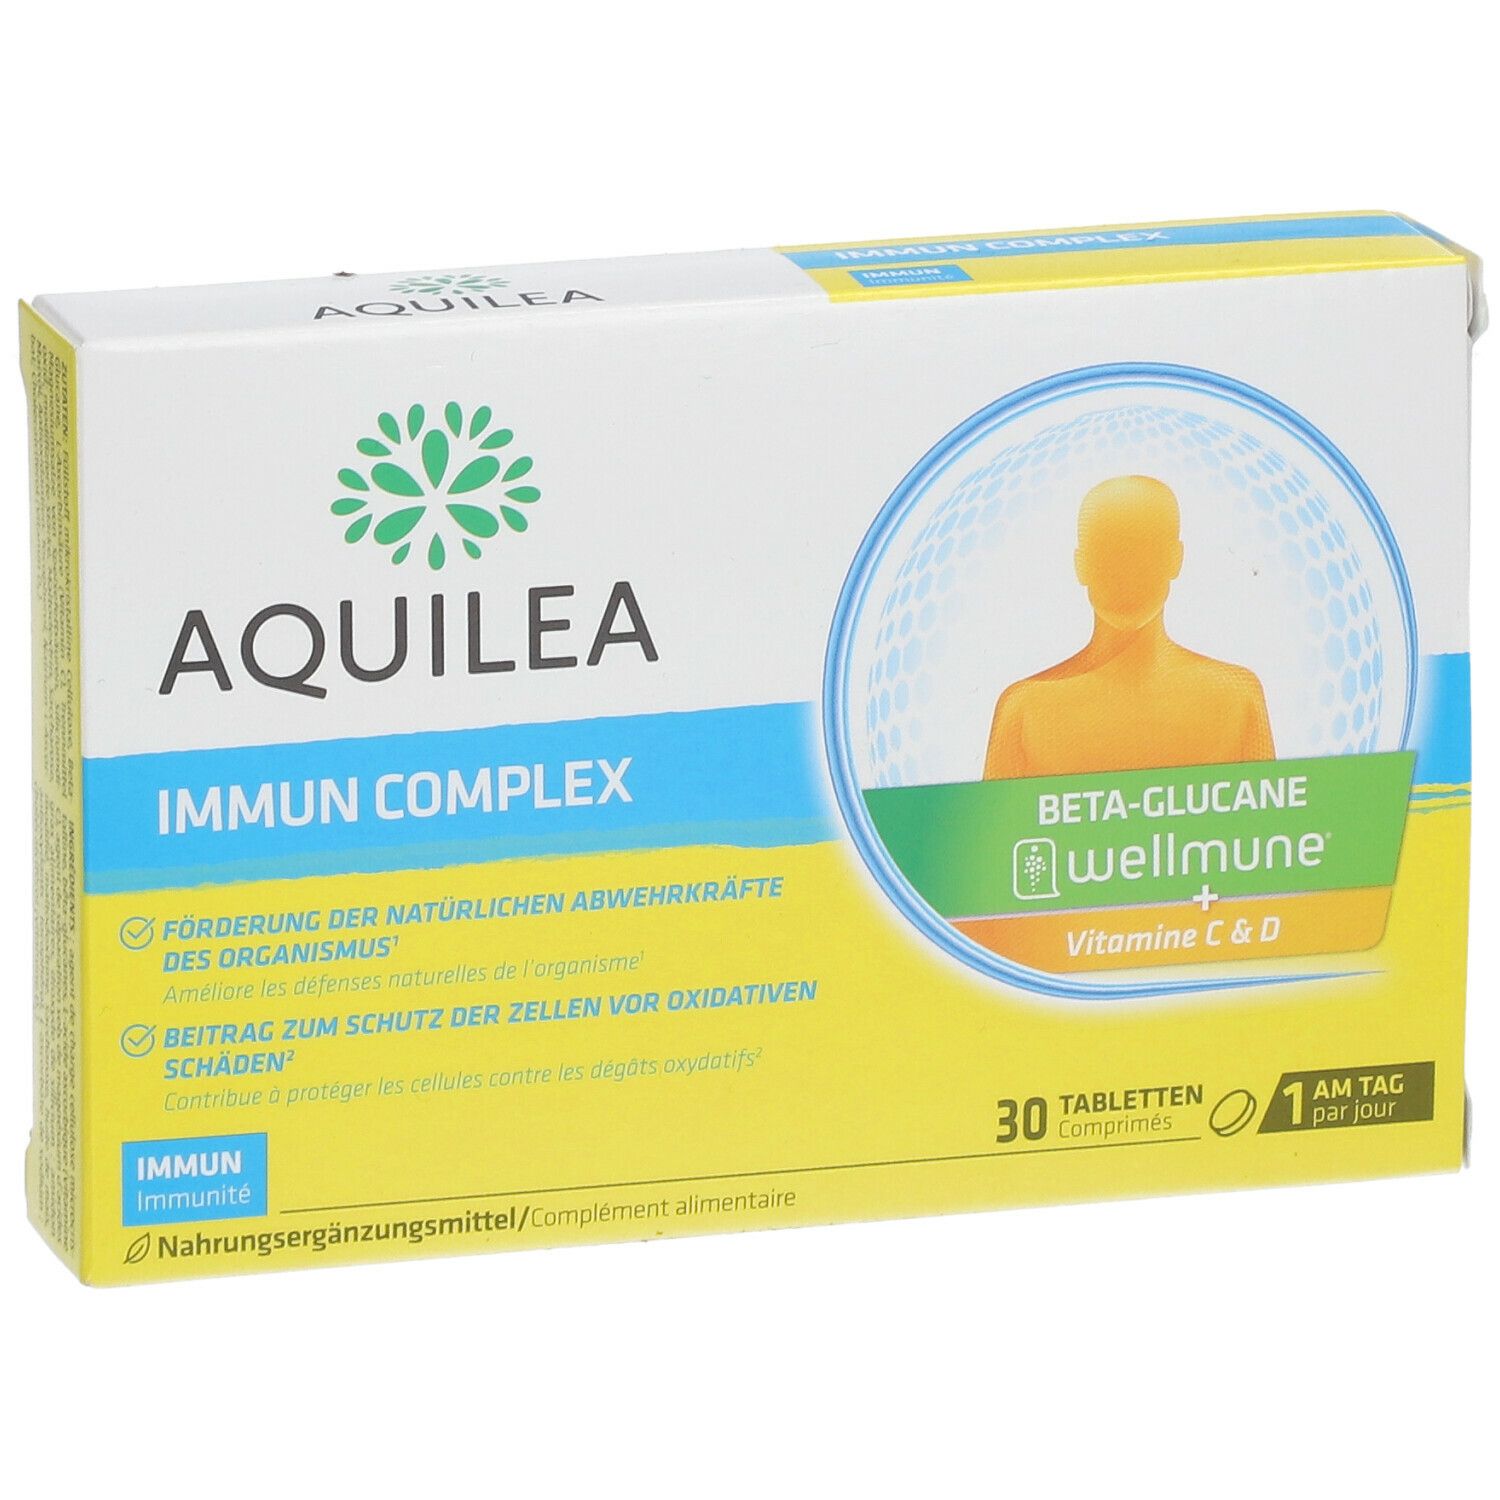 AQUILEA Immun Complex